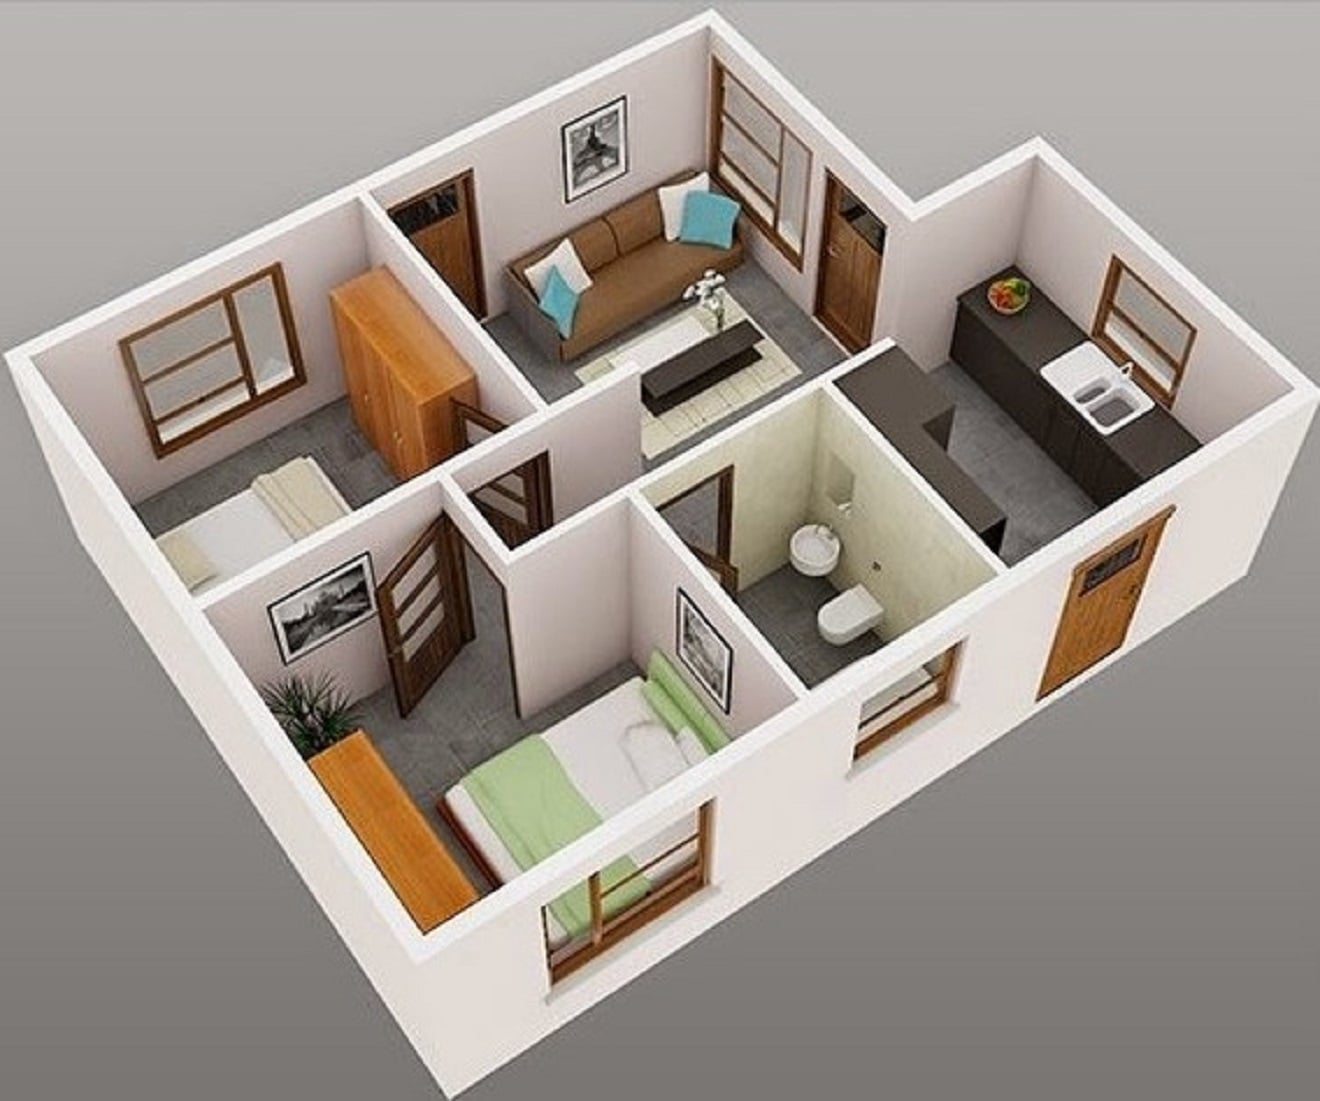 11 Terbaik Rumah Minimalis Sederhana 1 Lantai 2 Kamar Yang Belum Banyak Diketahui